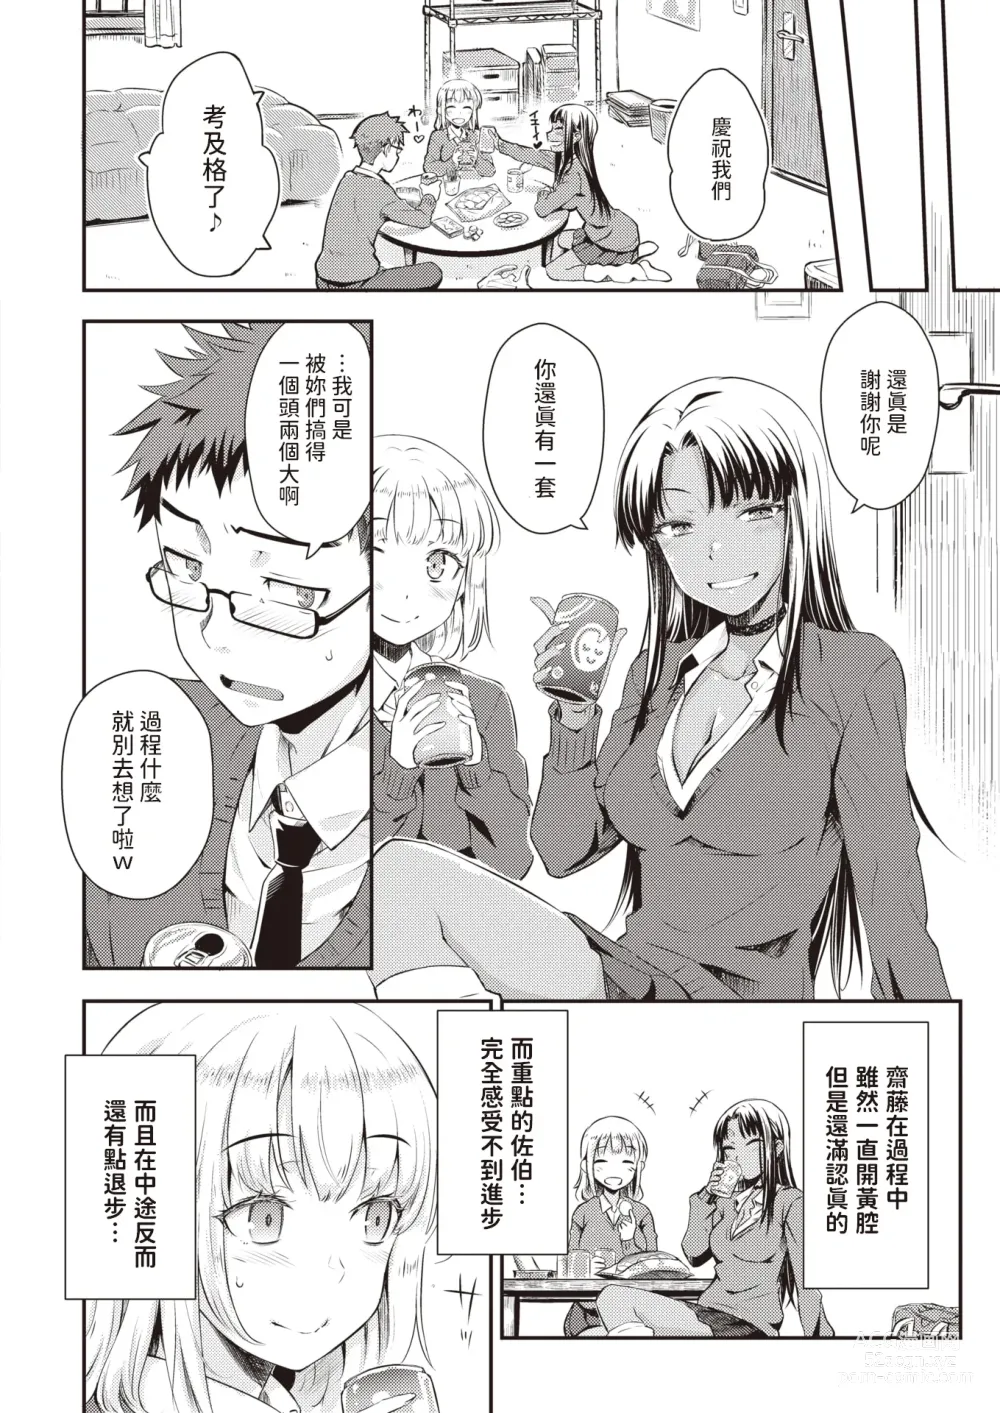 Page 4 of manga Oshiete Ageru